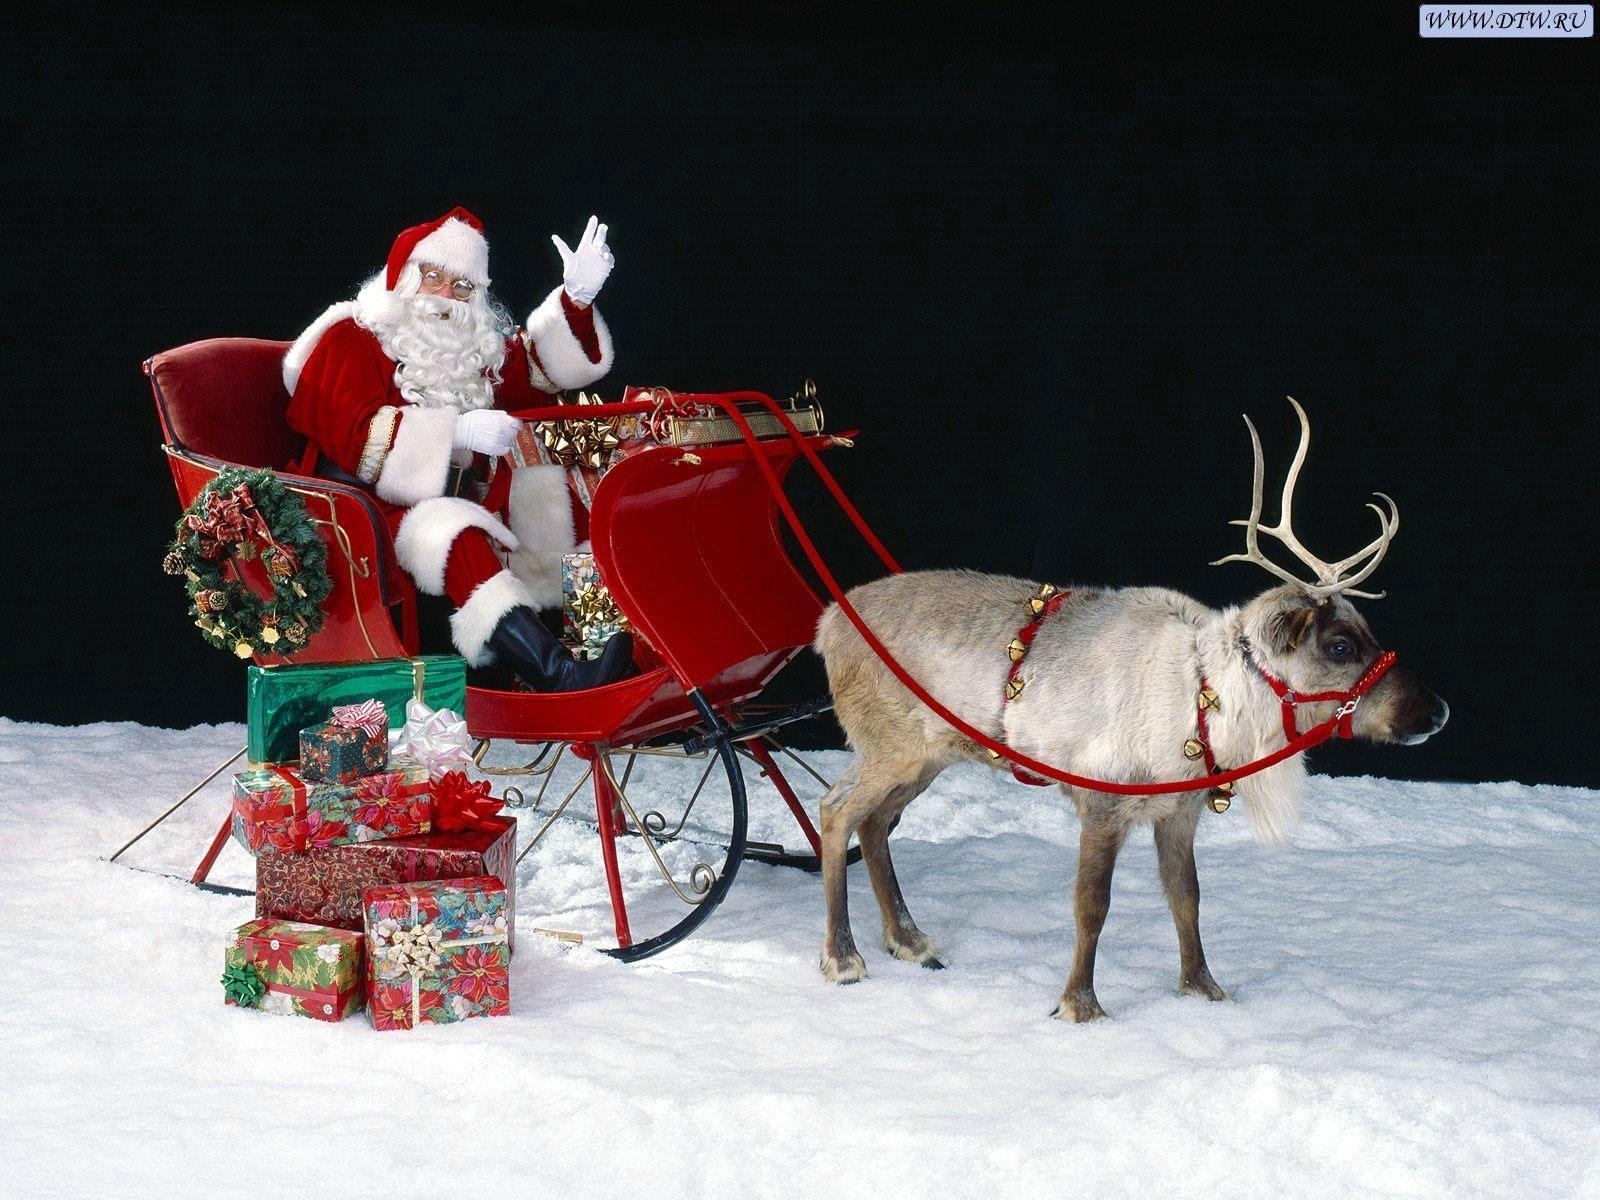 Скачать картинку Дед Мороз, Праздники, Новый Год (New Year), Санта Клаус (Santa Claus), Рождество (Christmas Xmas) в телефон бесплатно.